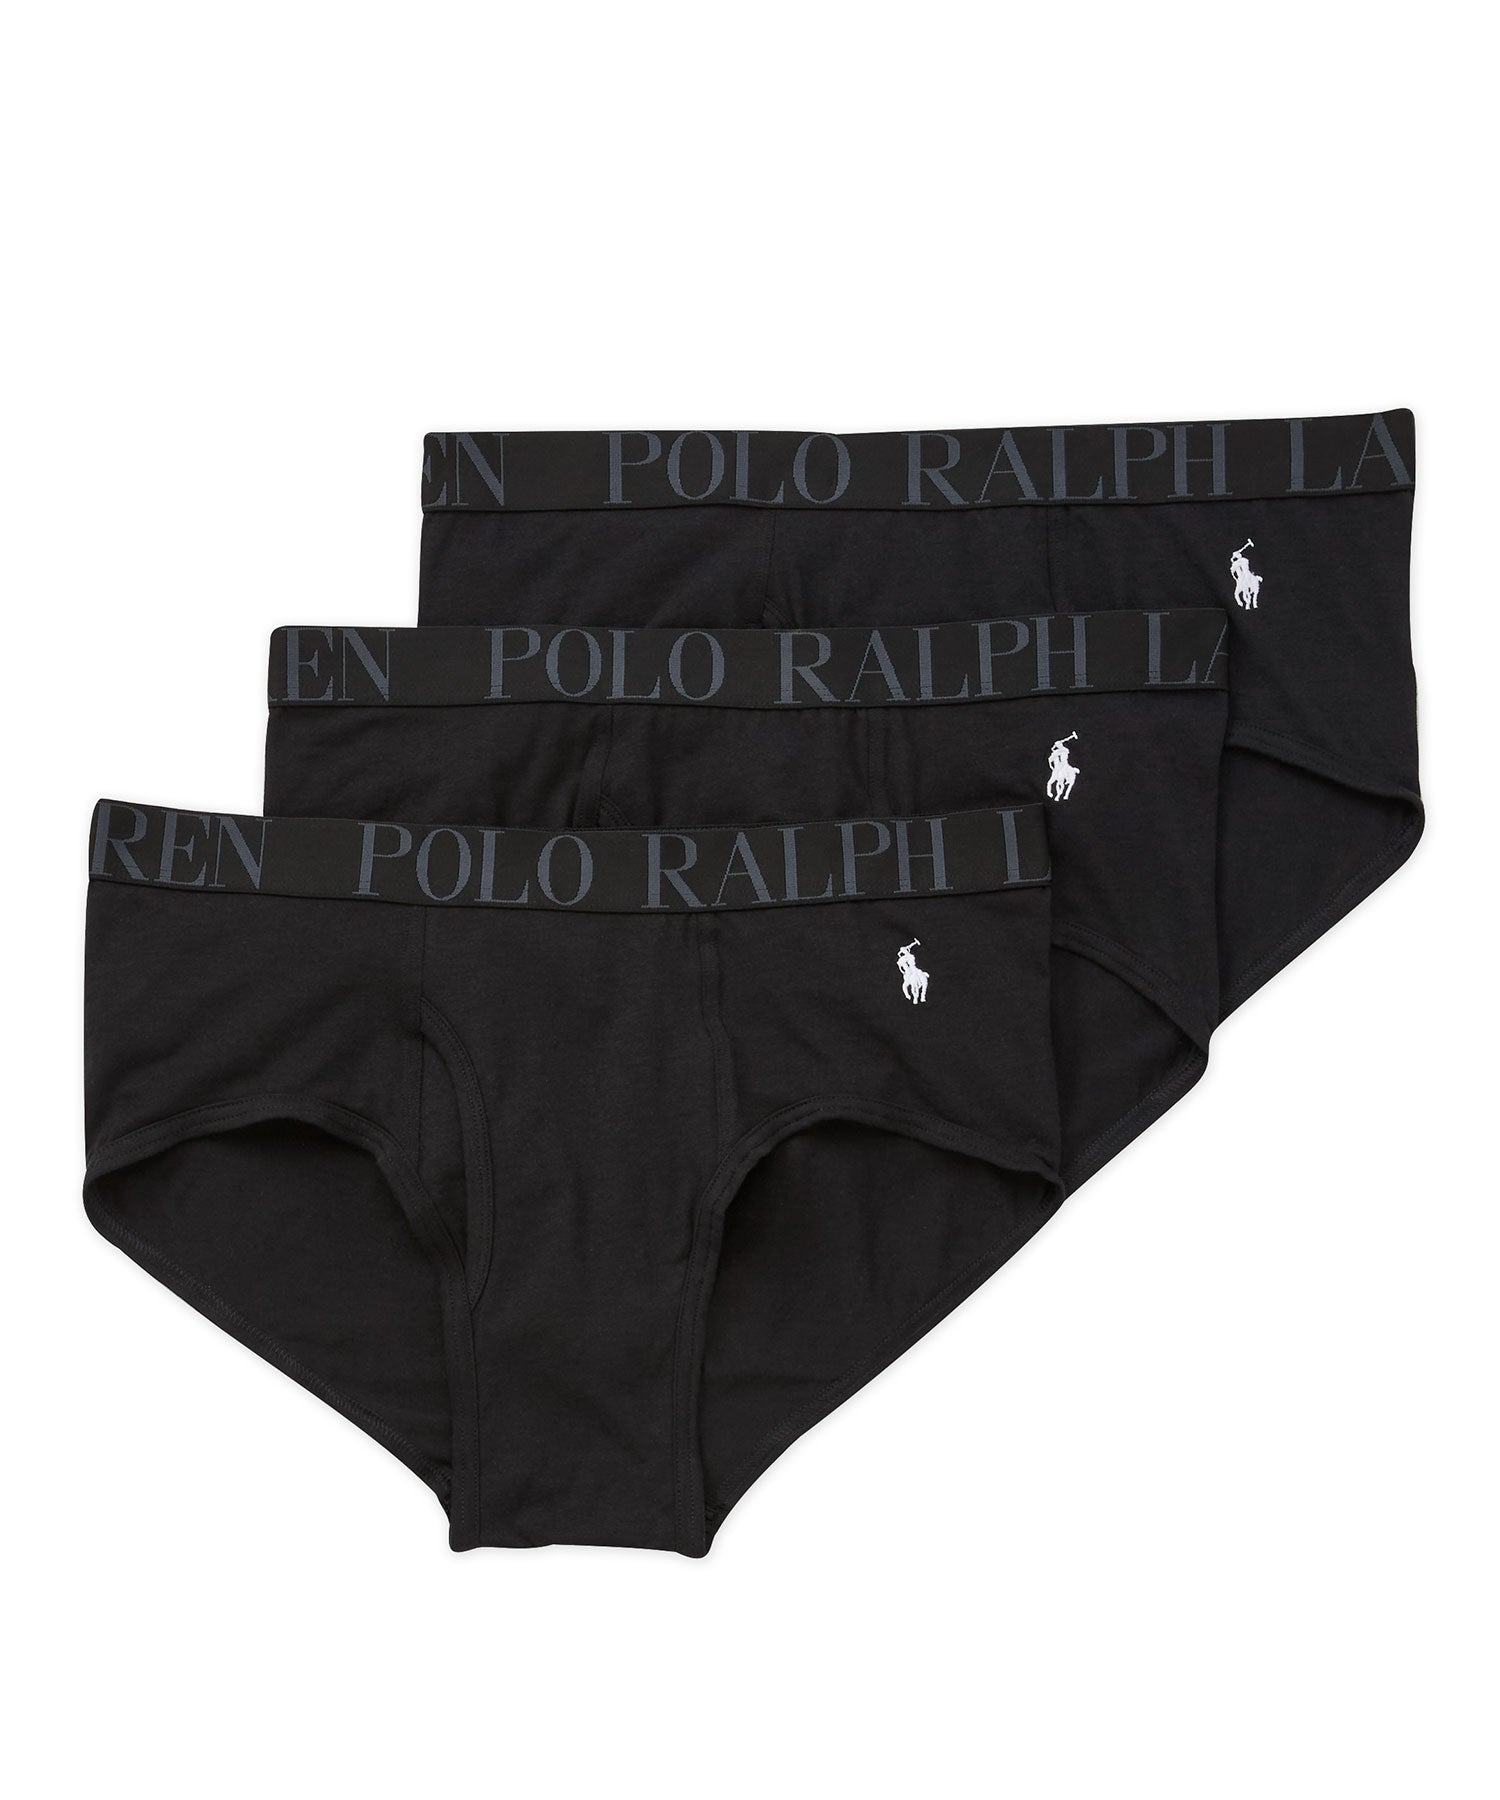 Polo Ralph Lauren Boxer Briefs (3-Pack) - Westport Big & Tall